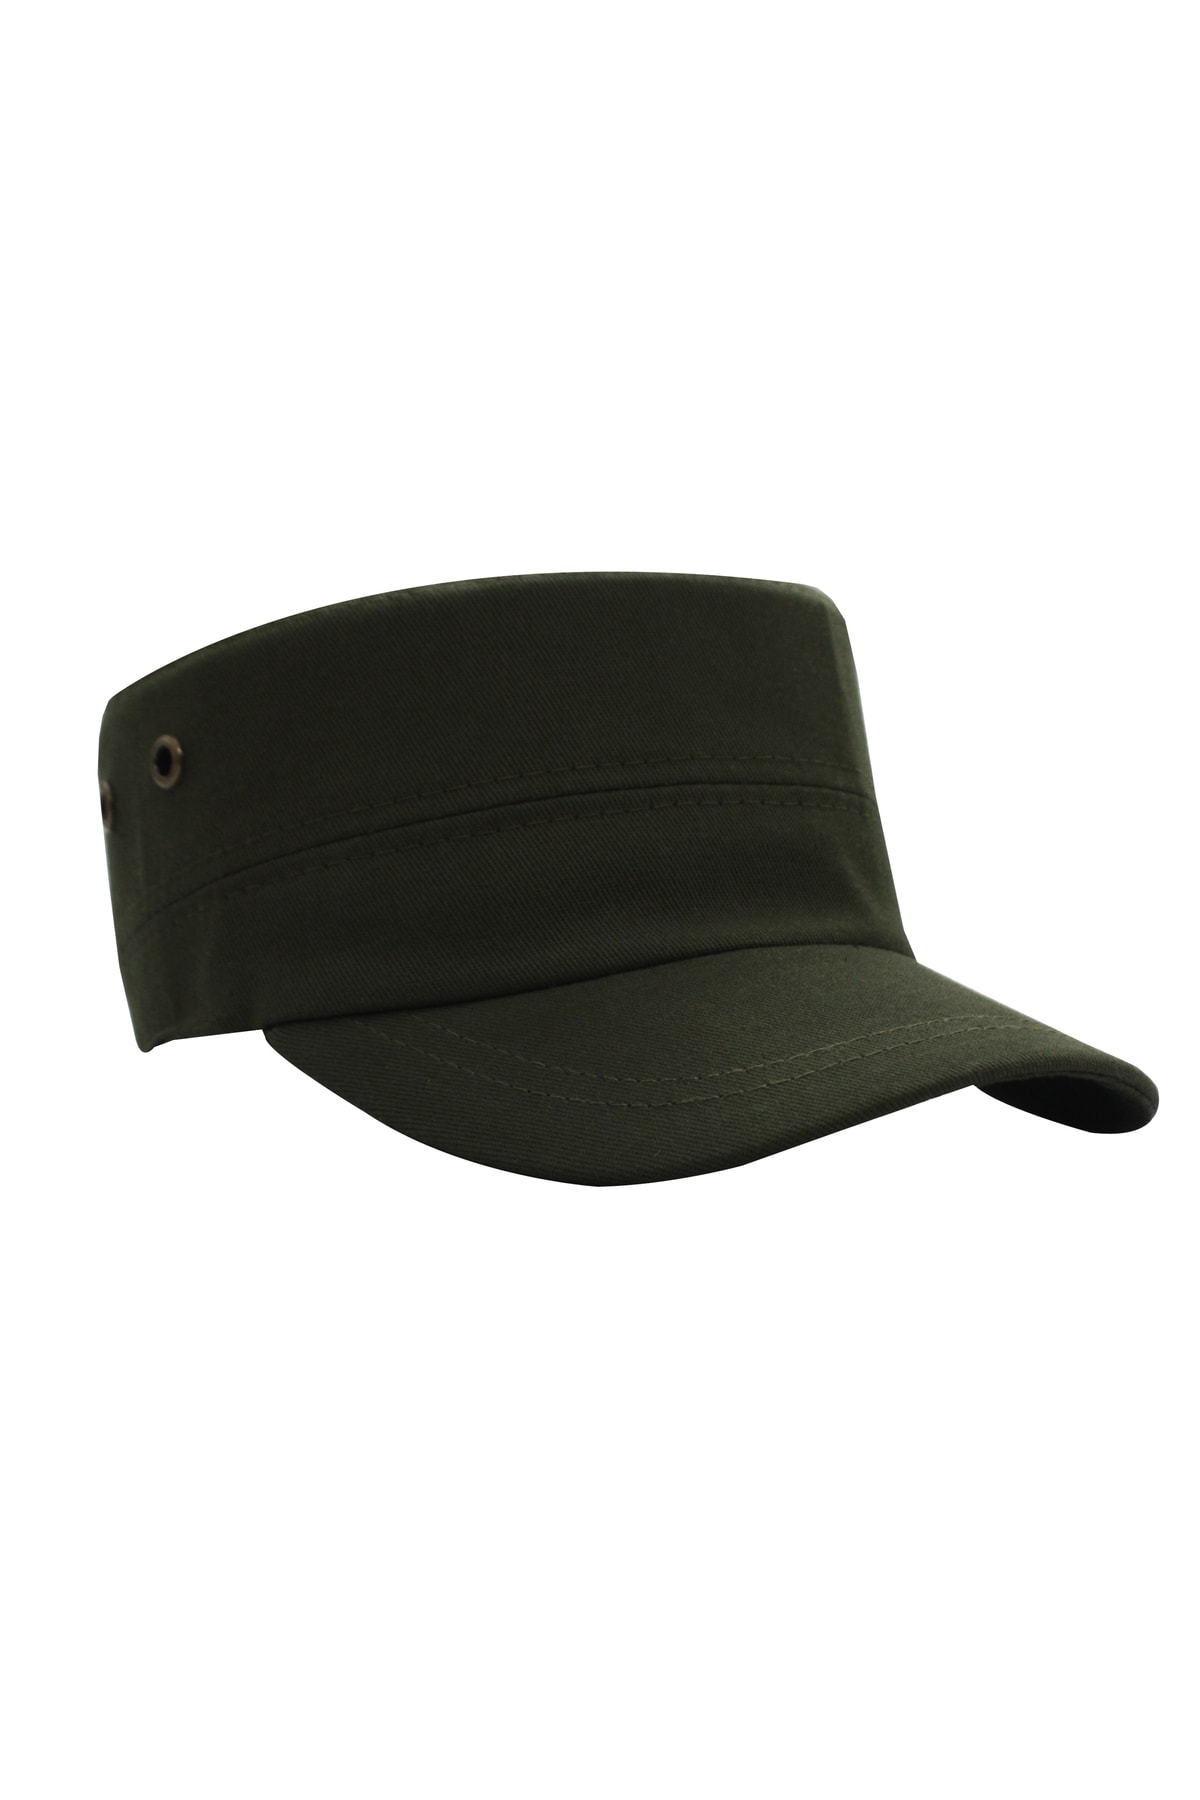 şapkadan Koyu Yeşil Şapka Kuşgözlü Kastro Avcı Şapkası Fidel Castro